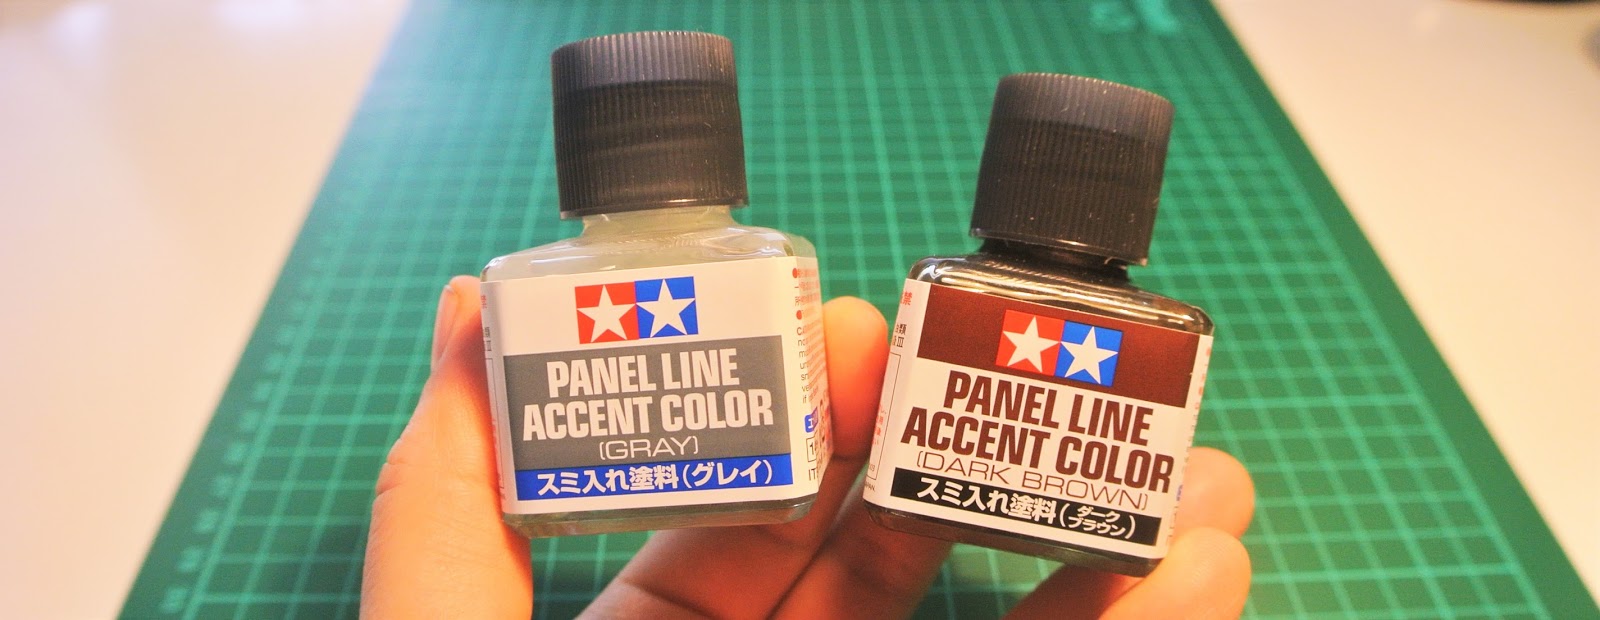 Panel Line Accent Color Black / Tamiya USA